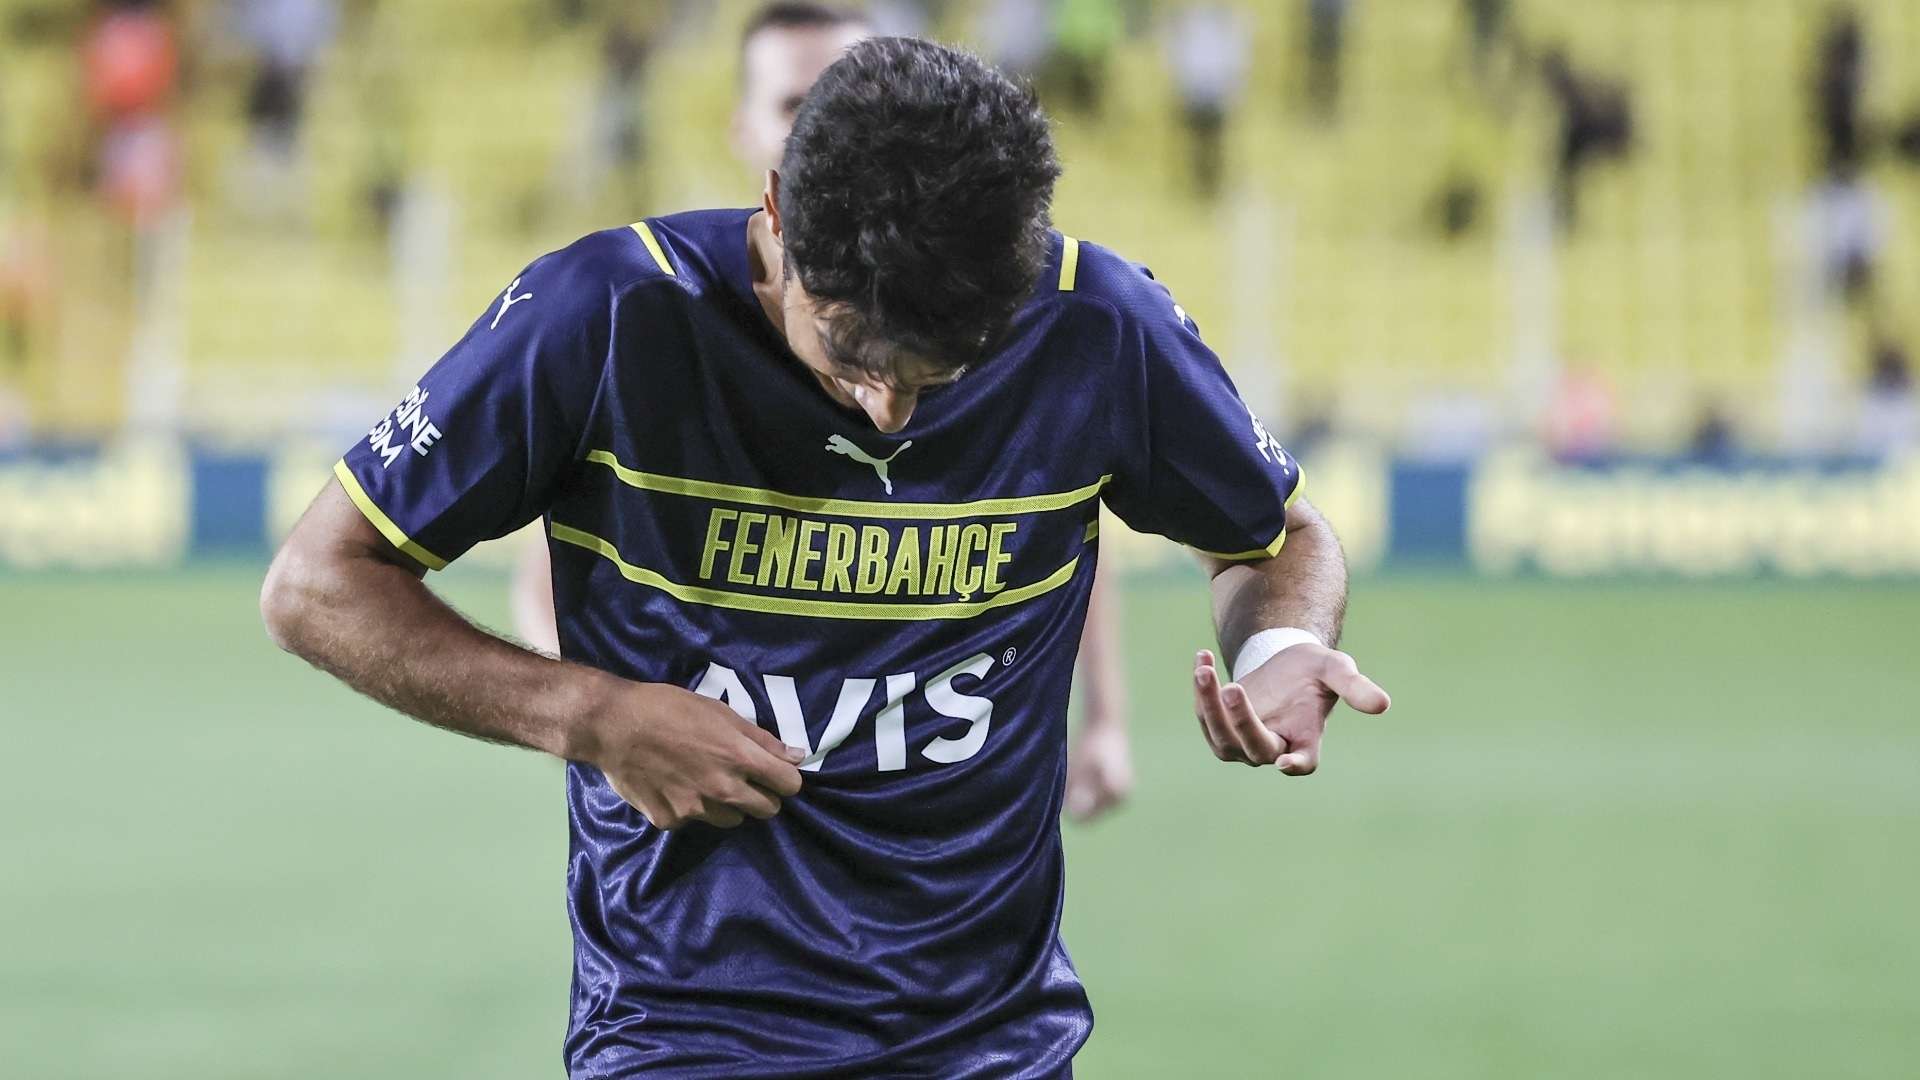 Muhammed Gümüşkaya Fenerbahçe 08202021